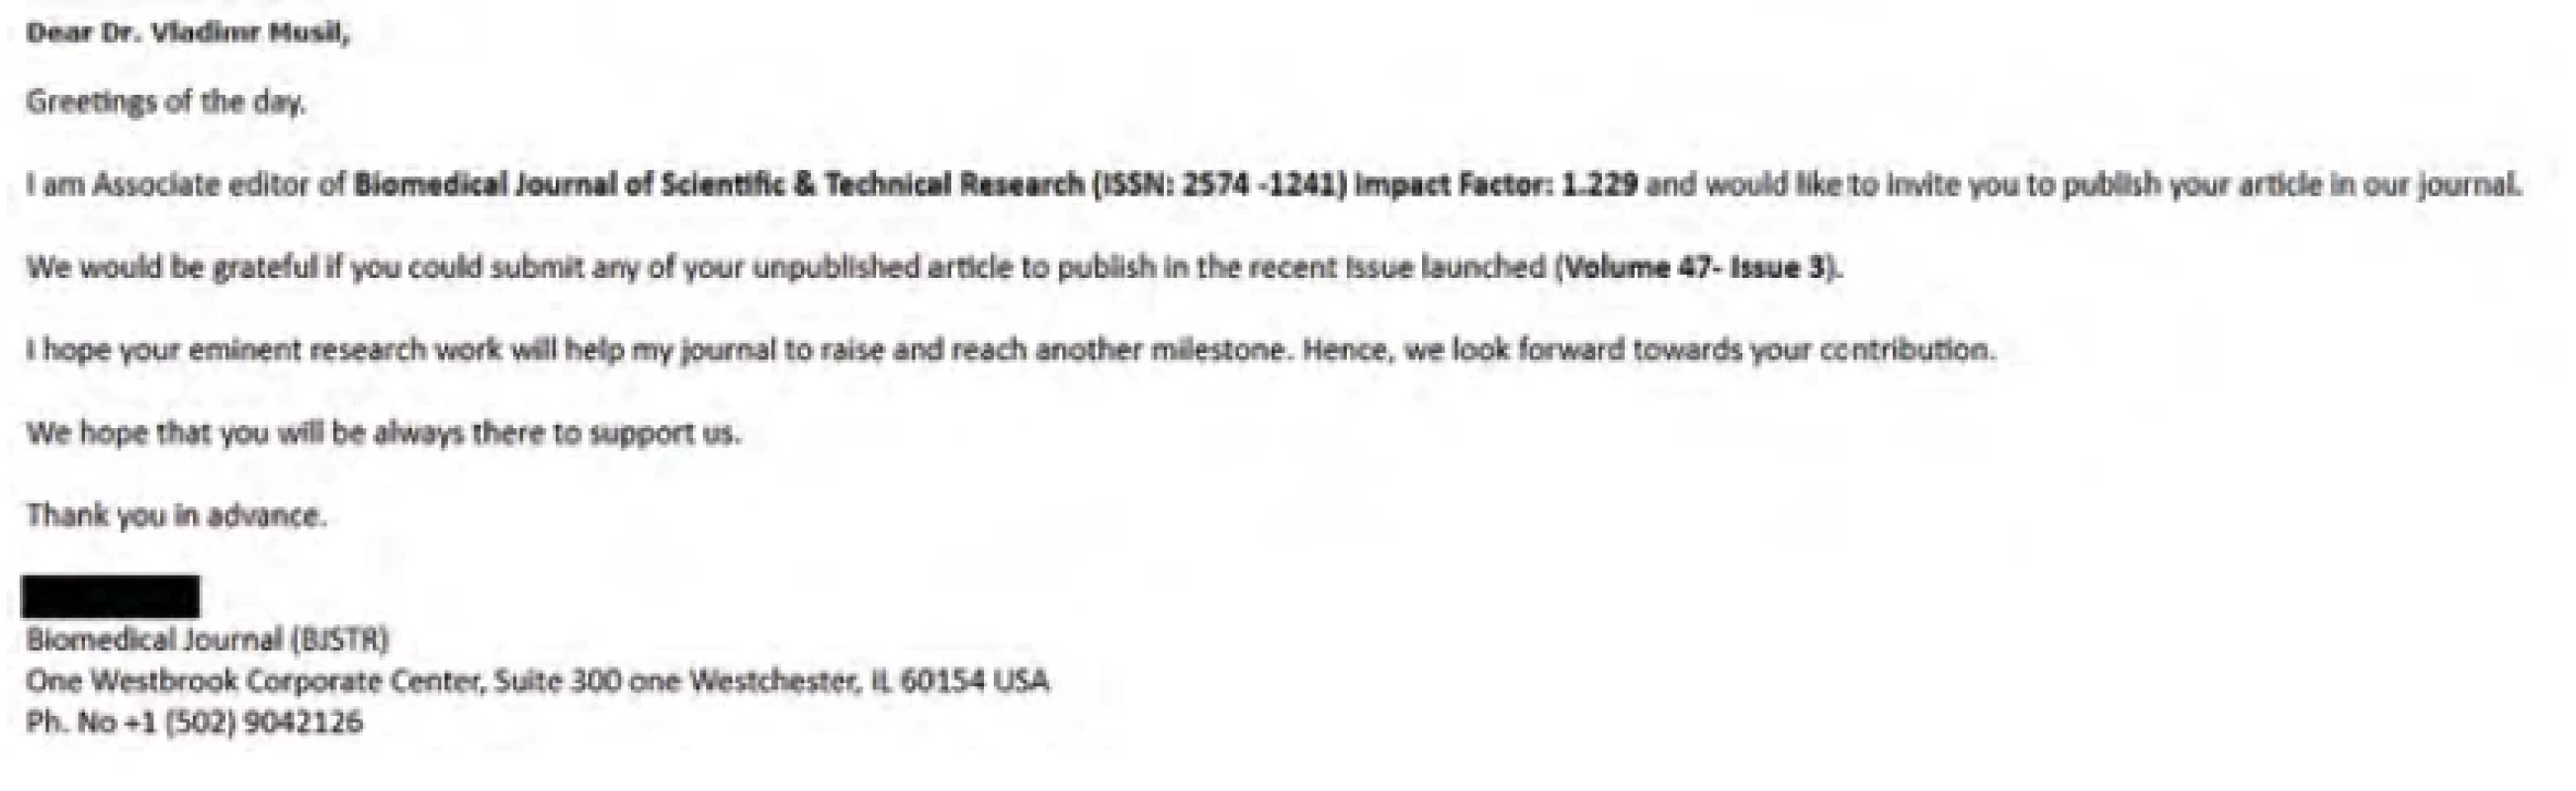 Mailová nabídka k publikování v časopisu „s impakt faktorem“ Biomedical Journal of Scientific & Technical Research